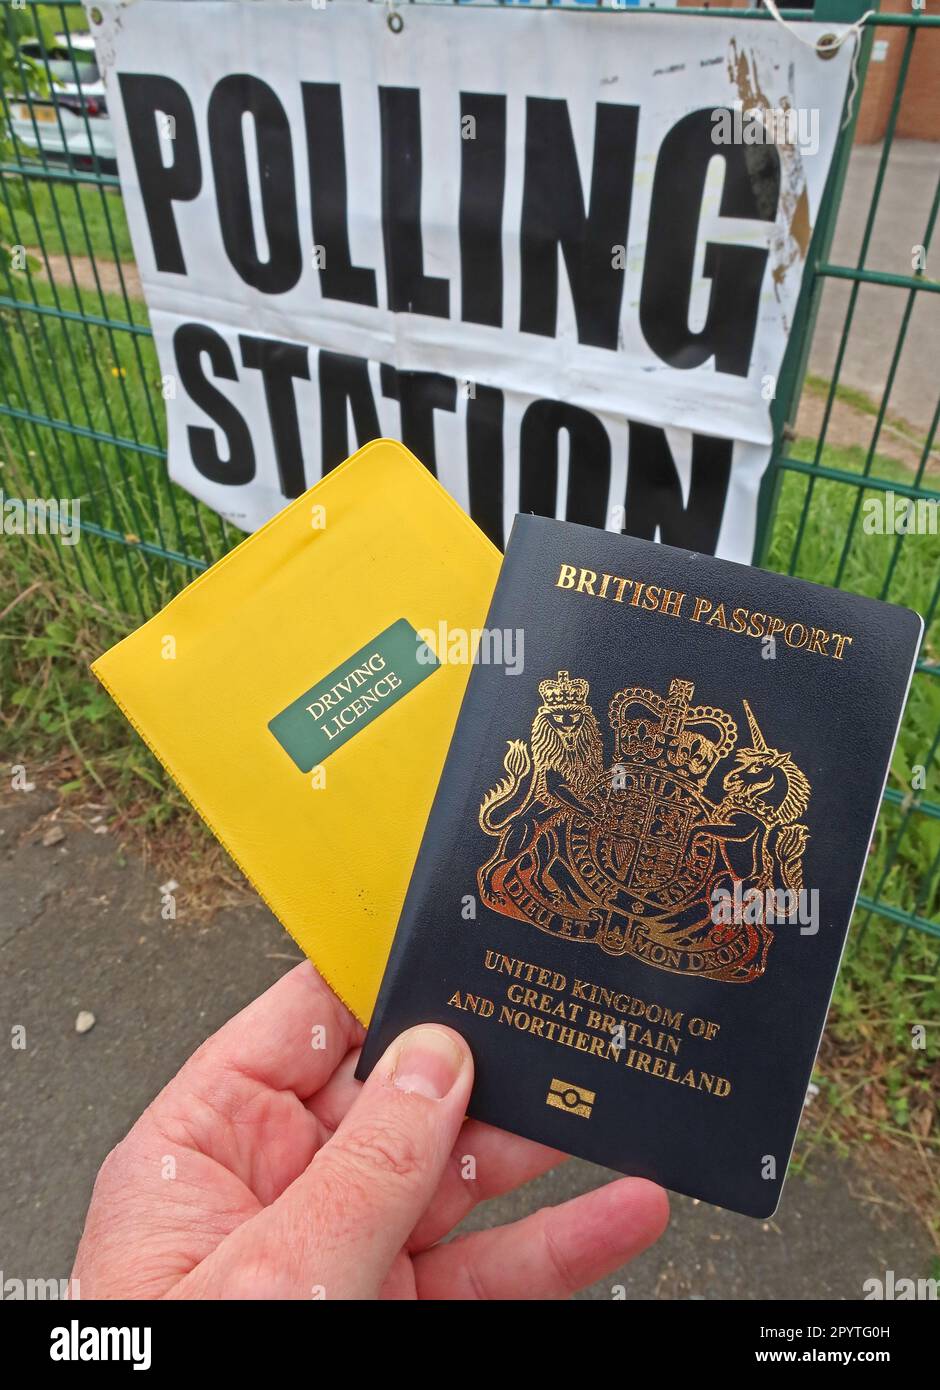 Pièce d'identité avec photo reconnue obligatoire, permis de conduire et passeport britannique, pour le vote aux élections générales et au conseil local, à la station de vote, Runcorn, en Angleterre Banque D'Images